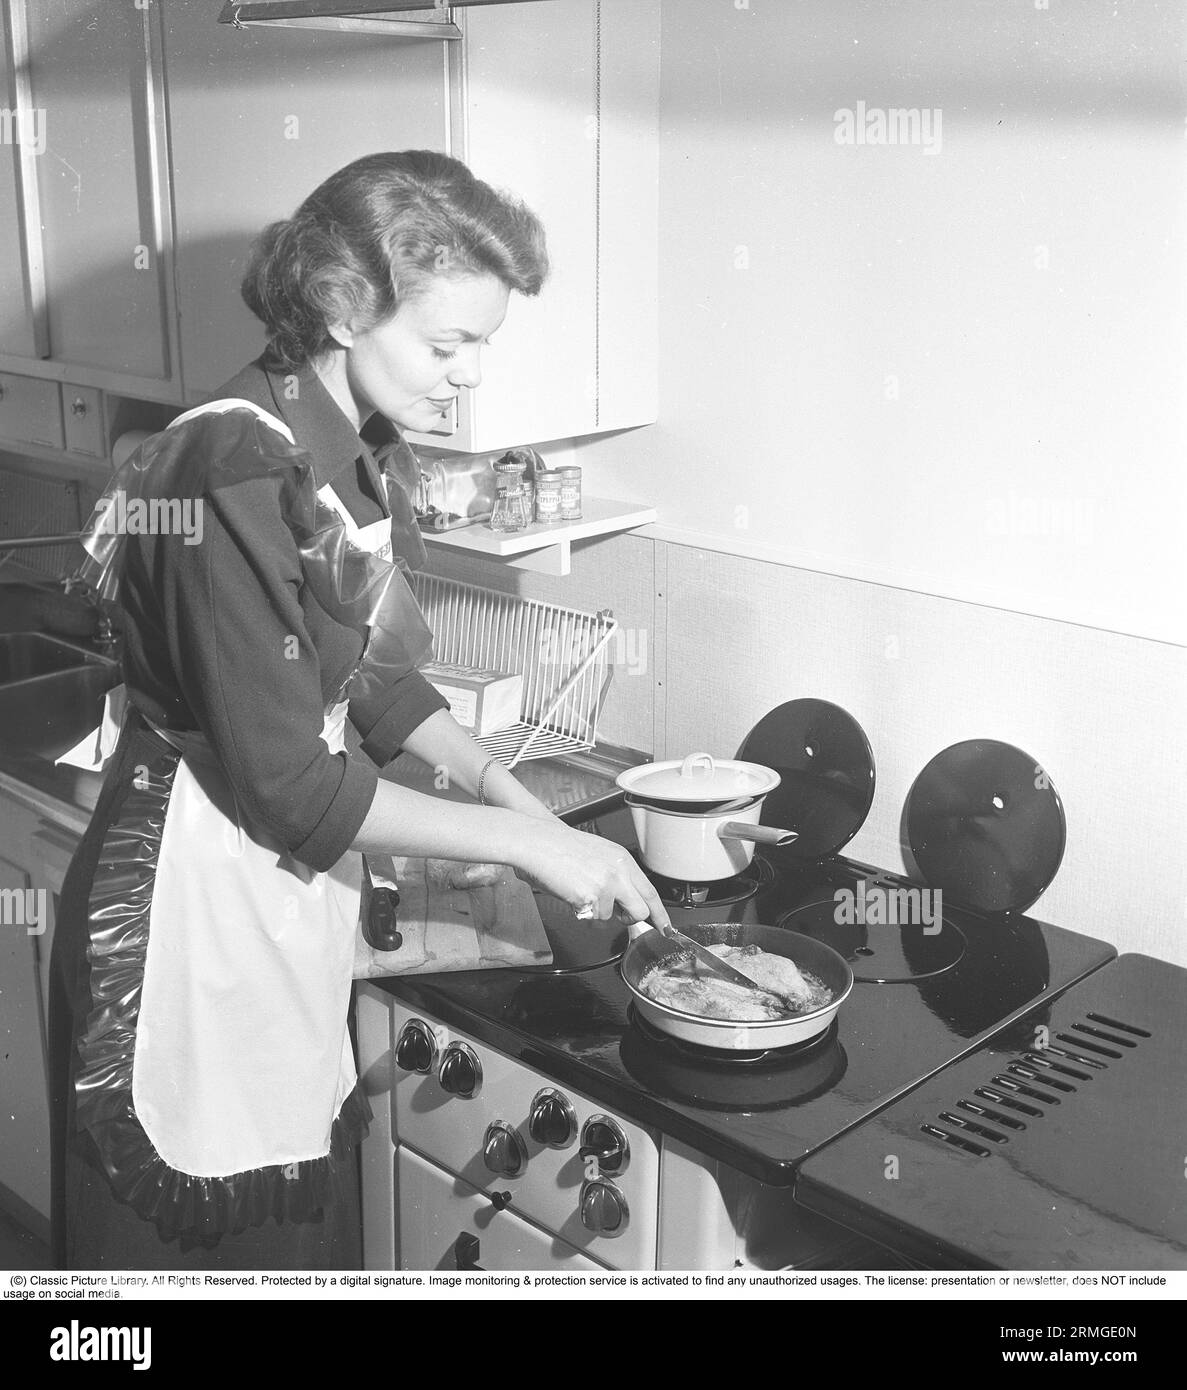 In der Küche der 1950er Das Innere einer Küche und eine junge Frau, die am Küchenherd steht und etwas kocht, das schmeckt. Sie trägt eine Plastikschürze. Sie ist Haide Göransson, 1928–2008, Modemodel und Schauspielerin. Schweden 1950 Kristoffersson ref AU23-3 Stockfoto